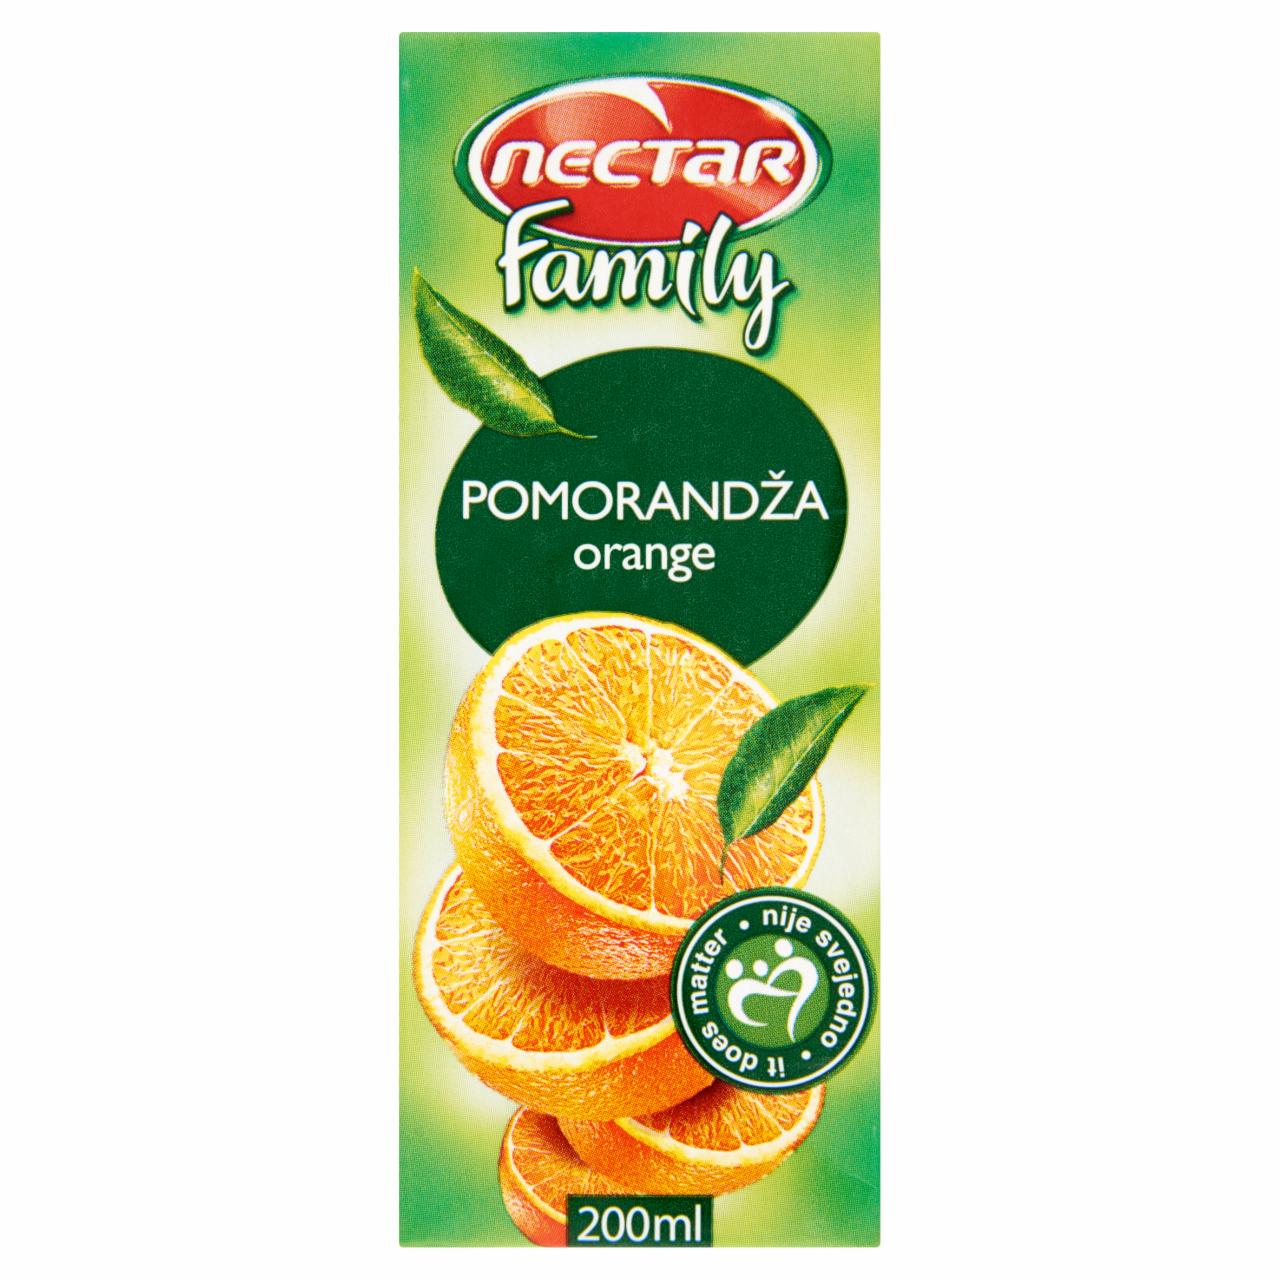 Képek - Nectar Family narancs nektár 200 ml